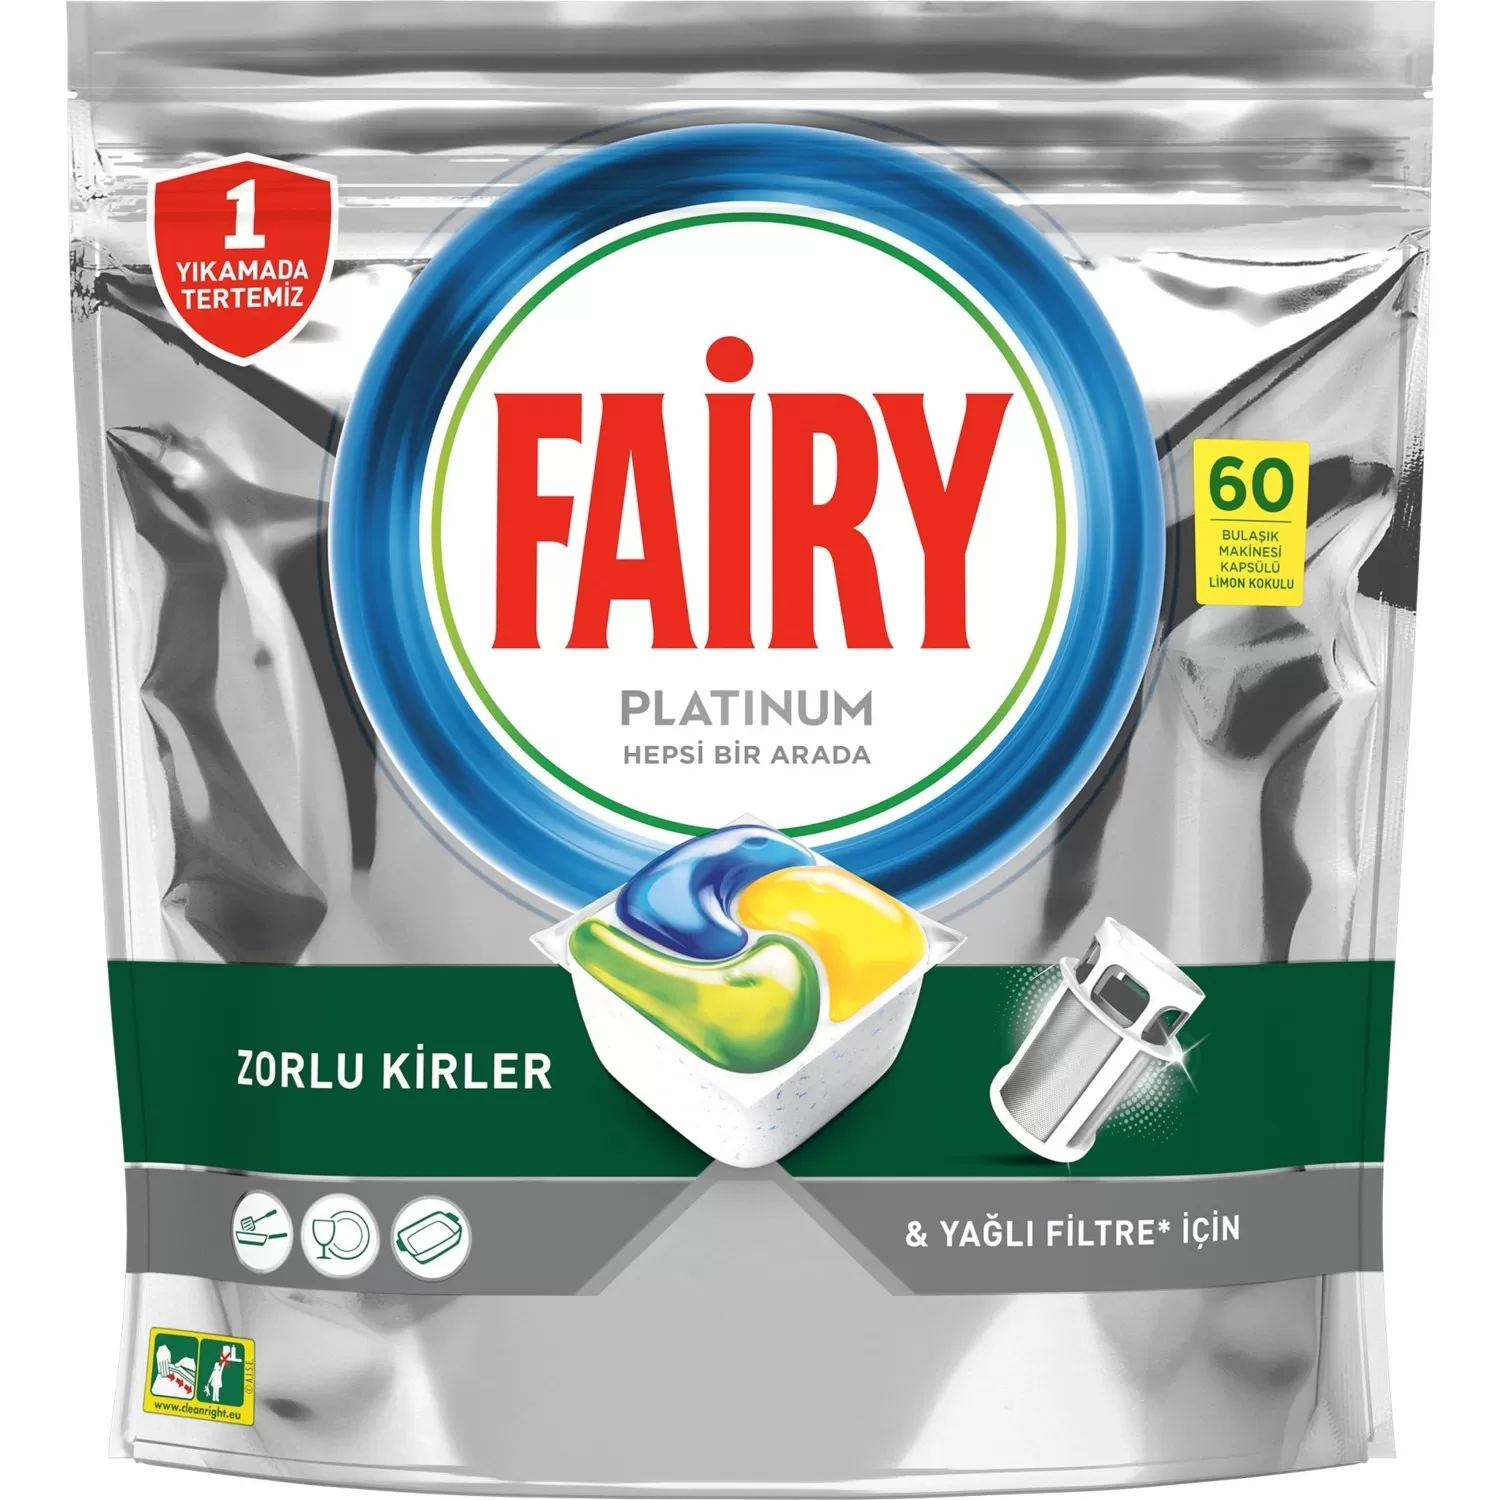 Fairy Platinum Bulaşık Makine Deterjanı 60x4 240 Tablet